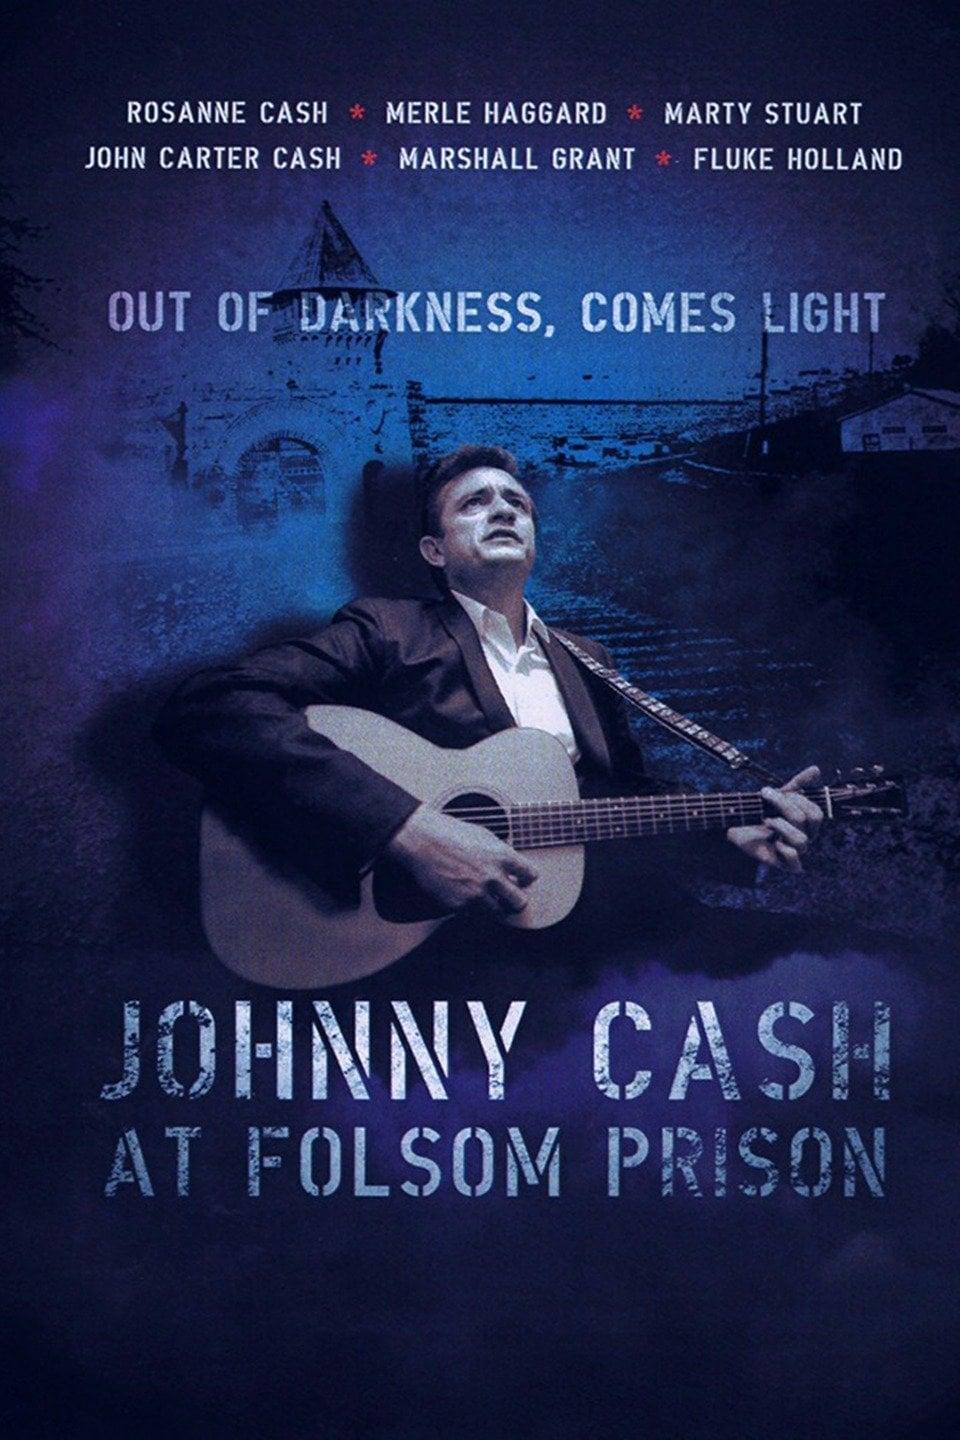 Johnny Cash at Folsom Prison poster